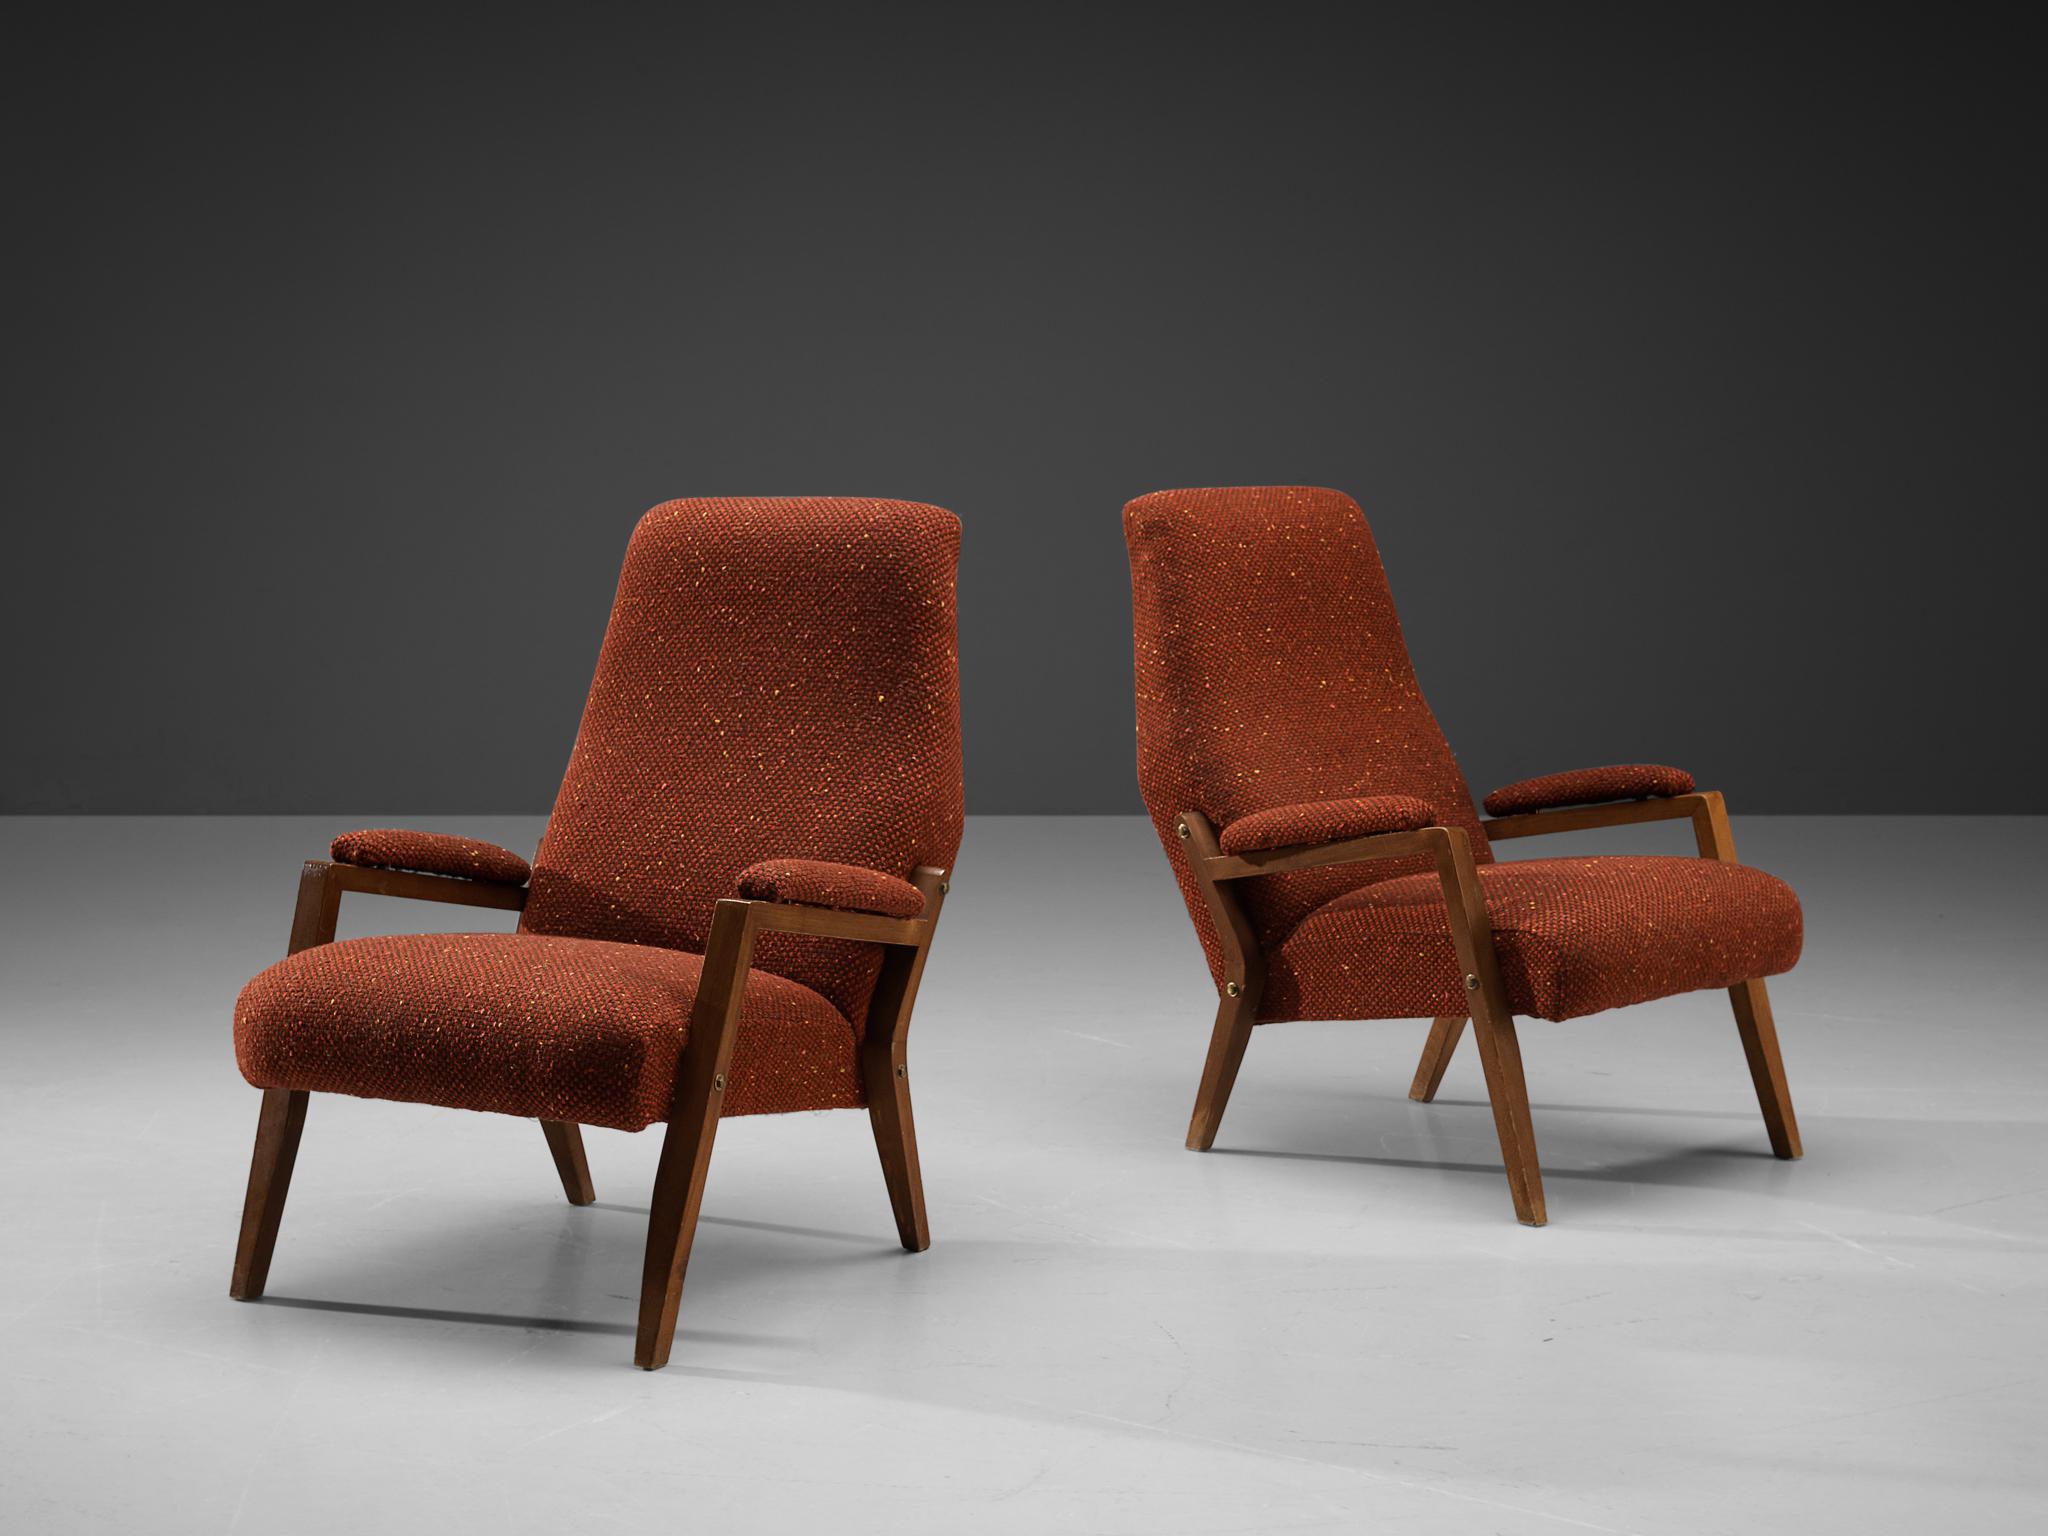 Paar Sessel, Buche, Stoff, Italien, 1960er Jahre.

Dieses Paar skulpturaler italienischer Loungesessel zeichnet sich durch eine solide Konstruktion aus, die sich in der Form der Armlehnen und der leicht geneigten, verlängerten Rückenlehne bemerkbar